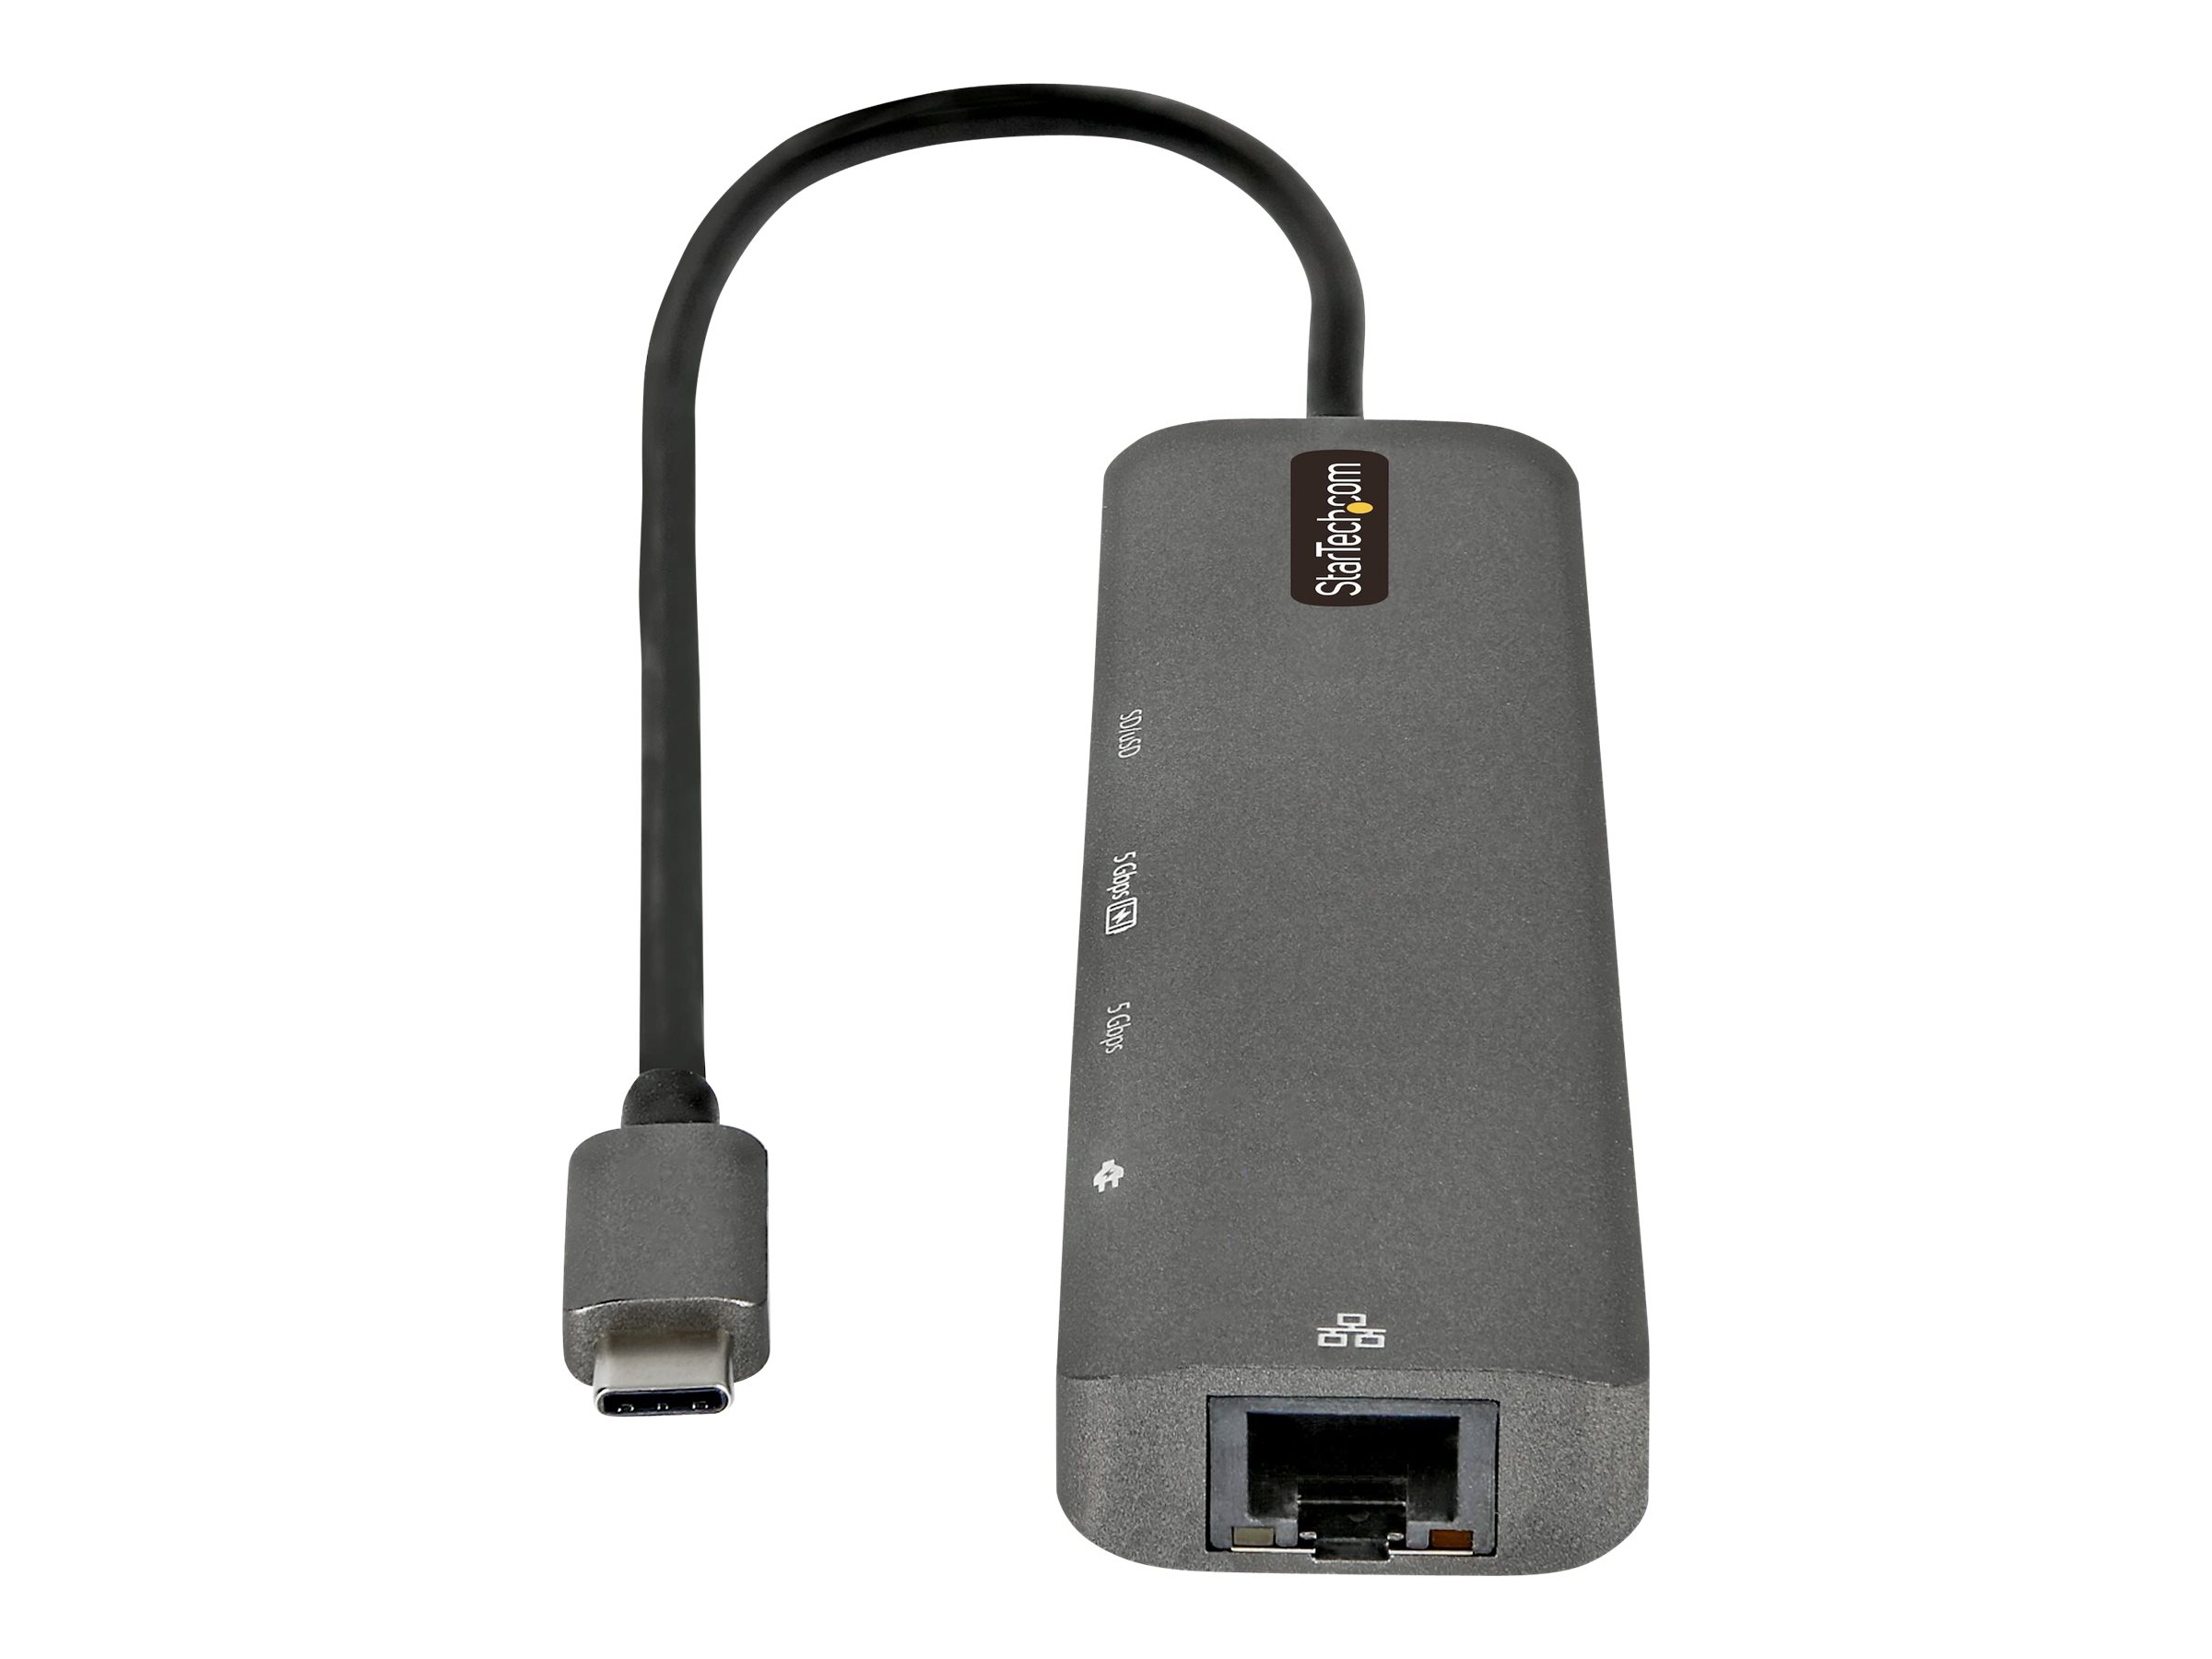 Hub USB 3.0 a 2 porte e lettore di schede a 3 slot con connessione